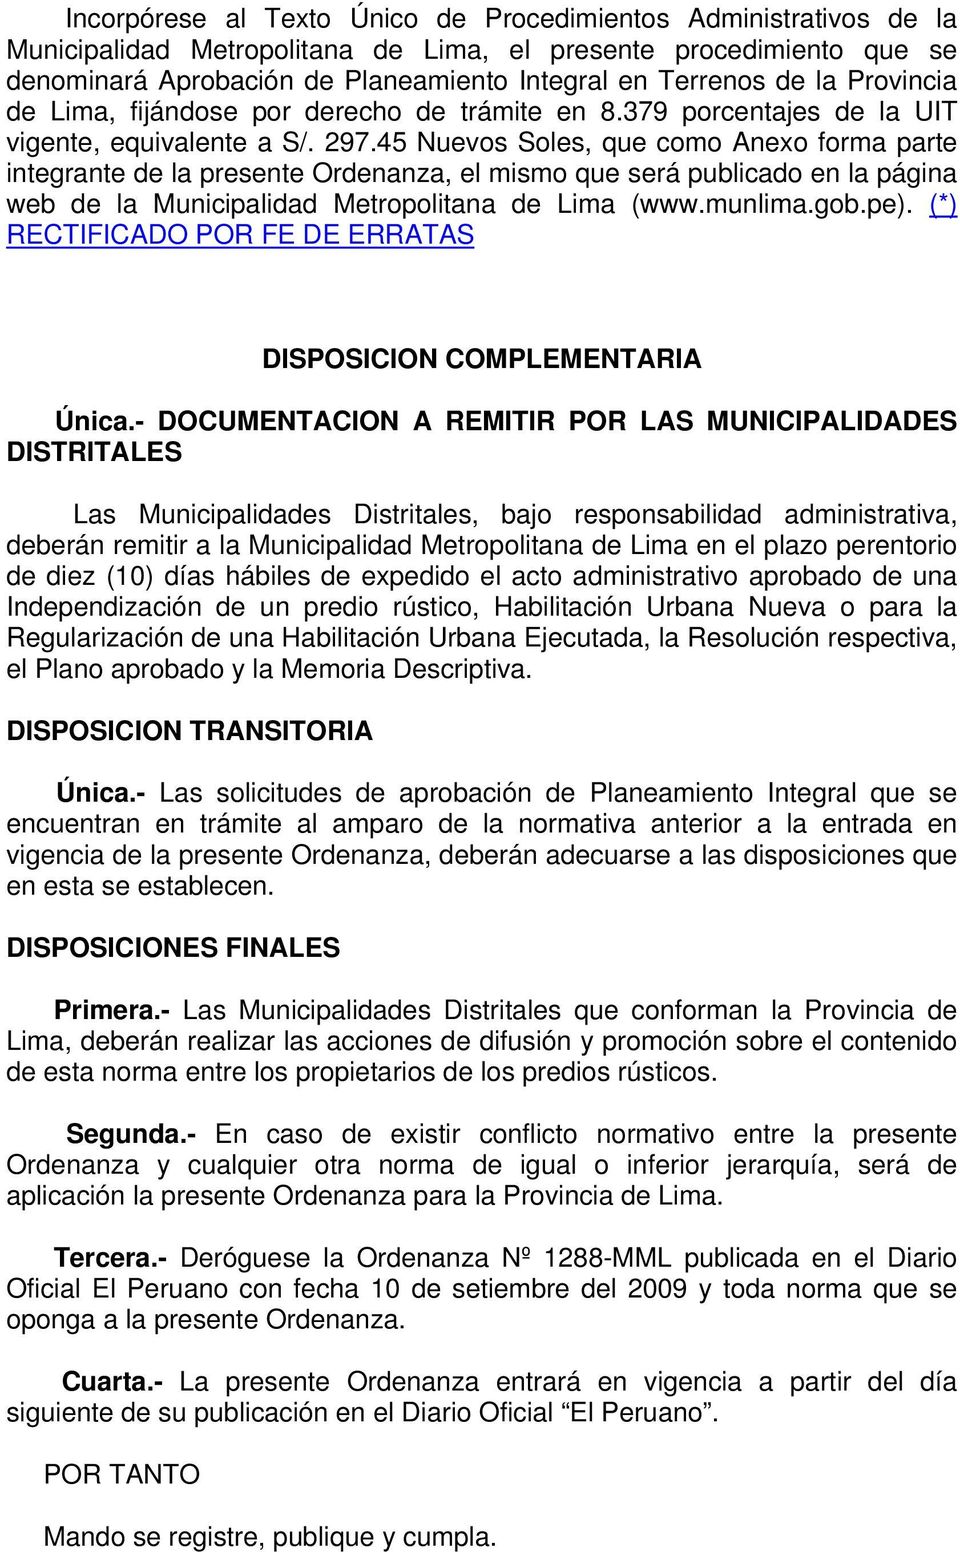 45 Nuevos Soles, que como Anexo forma parte integrante de la presente Ordenanza, el mismo que será publicado en la página web de la Municipalidad Metropolitana de Lima (www.munlima.gob.pe).